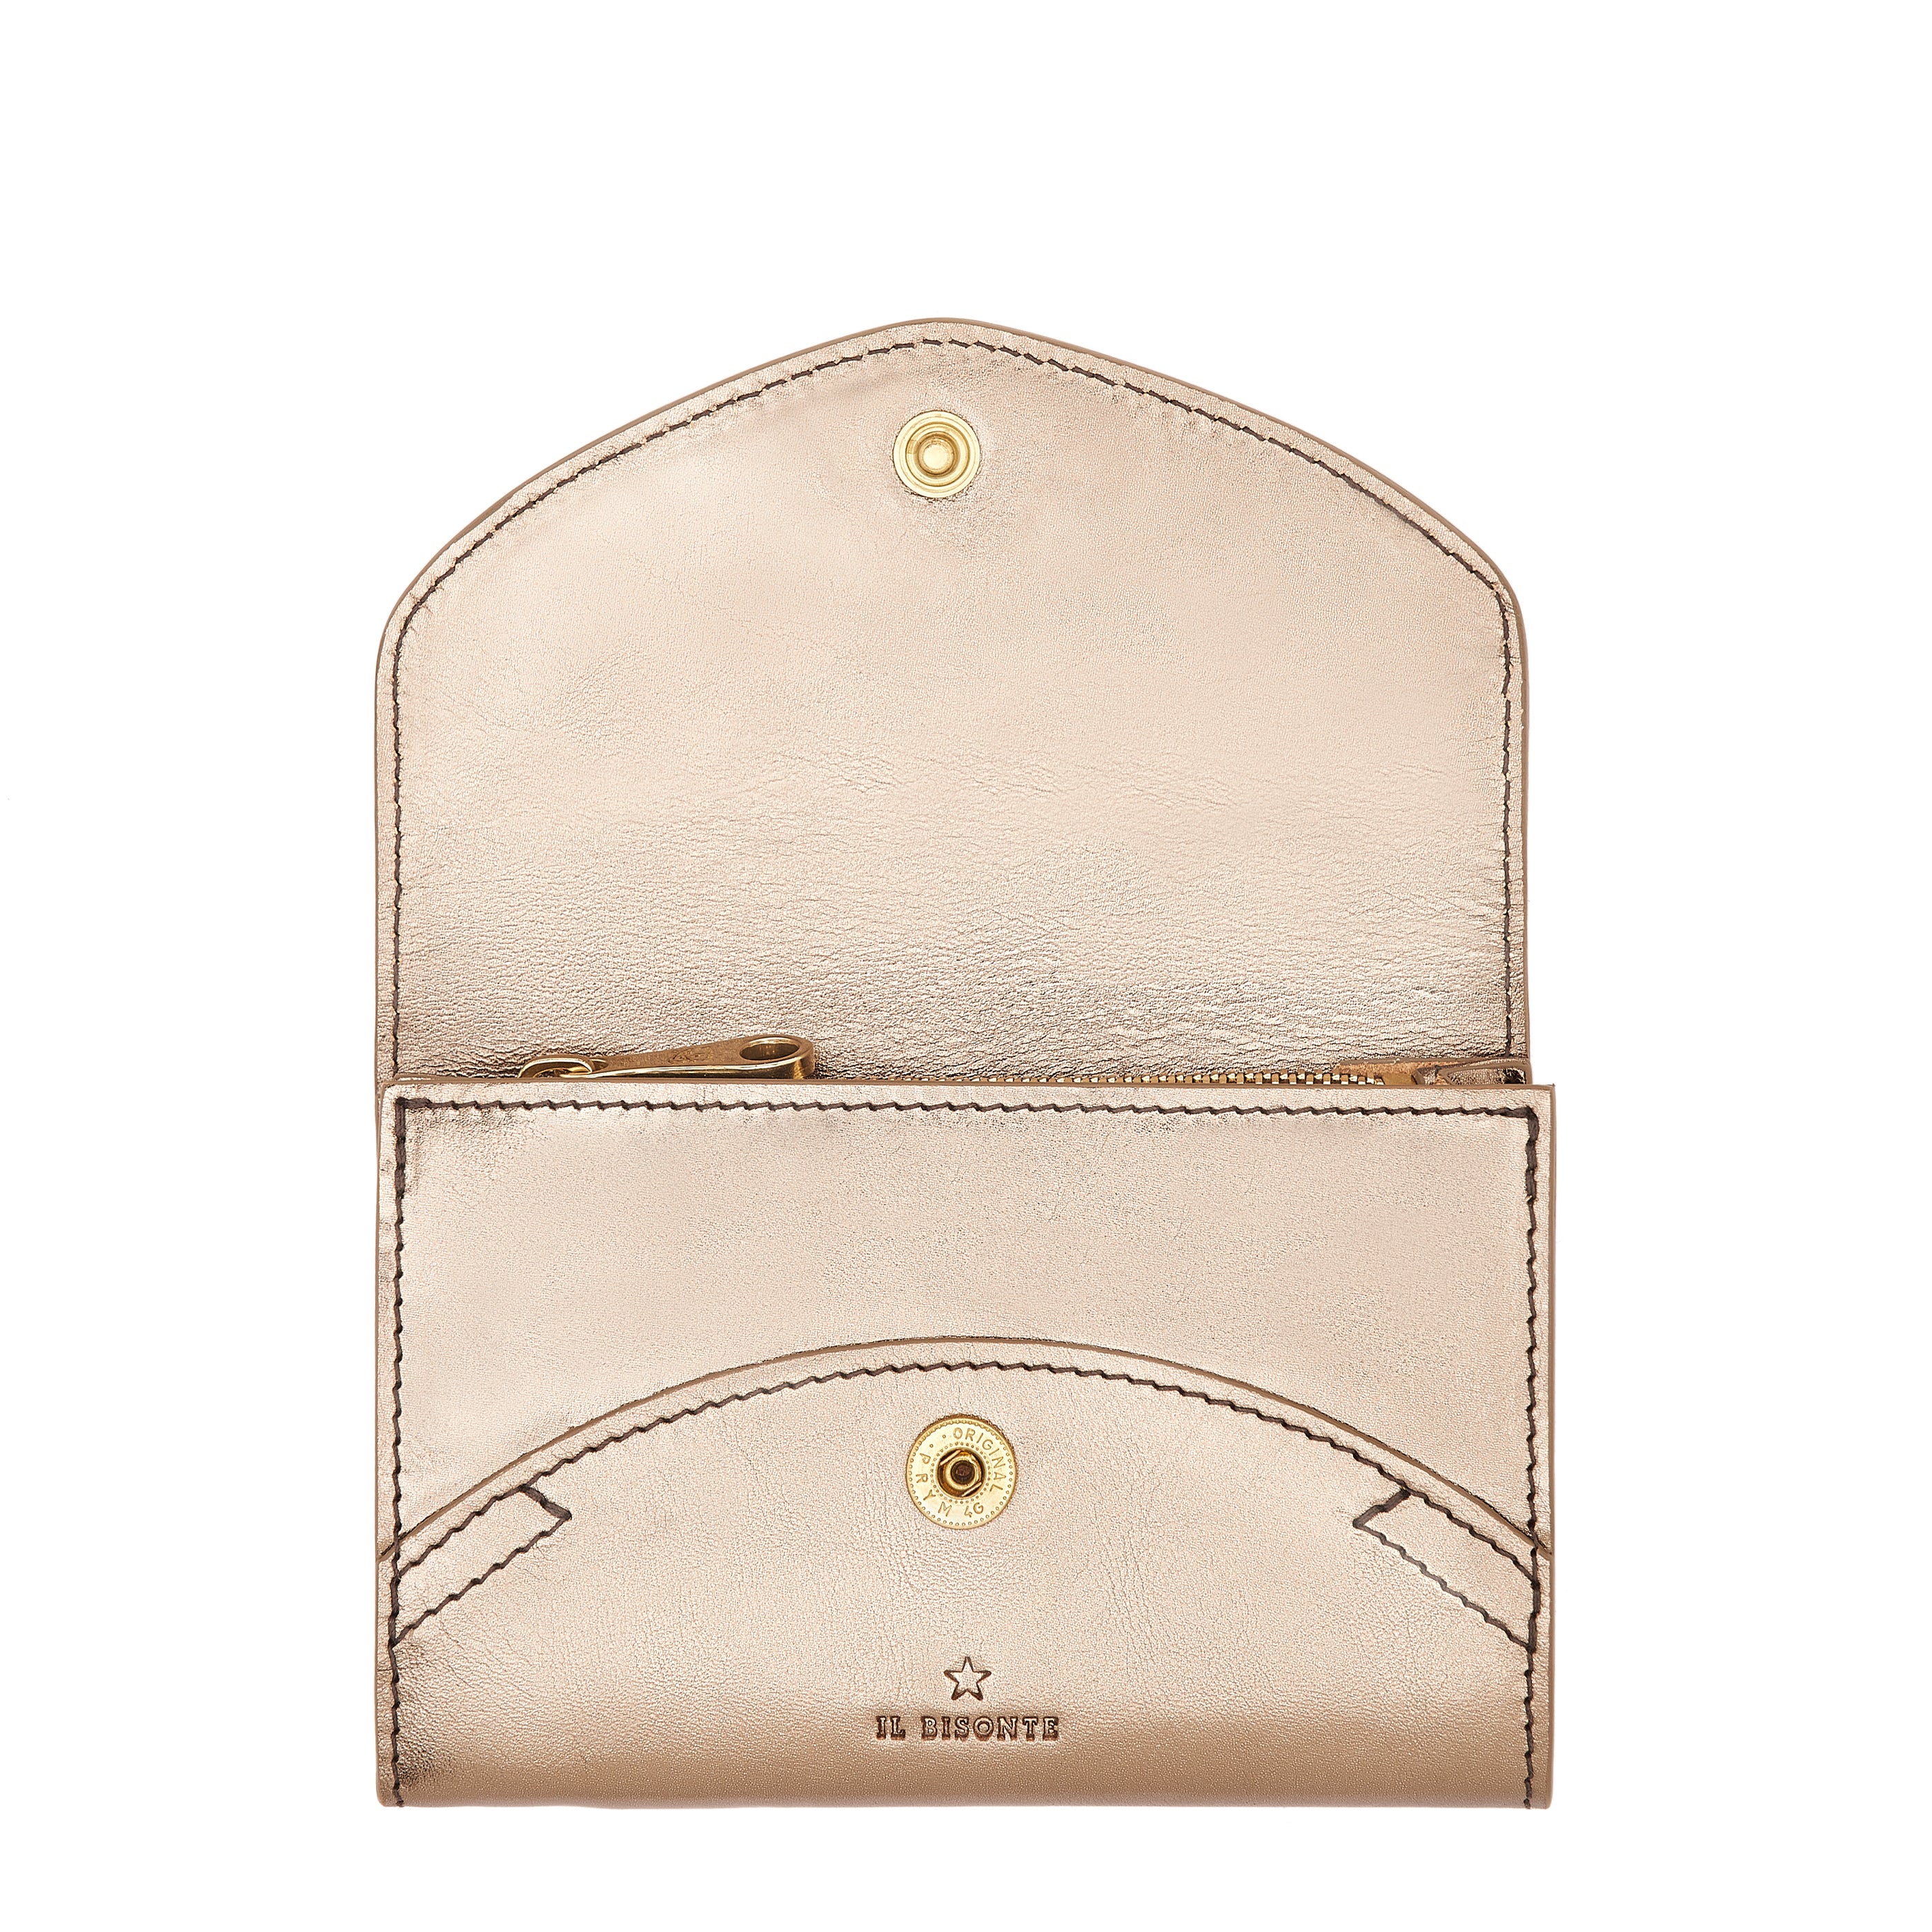 Esperia | Women's wallet in metallic leather color metallic bronze